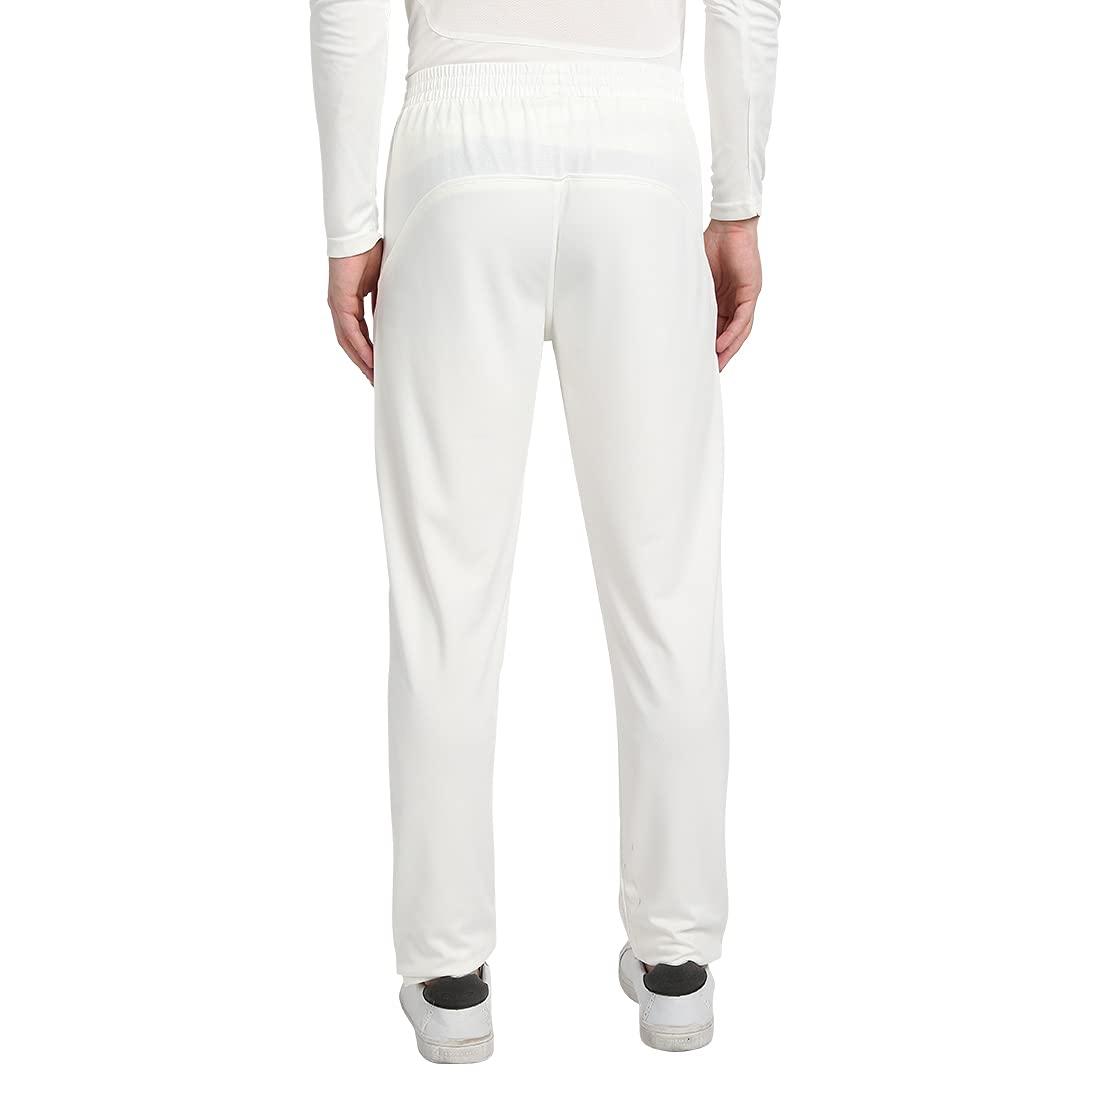 Cricket Pant  Trouser  White Color  Custom Color Uniform  On Sale